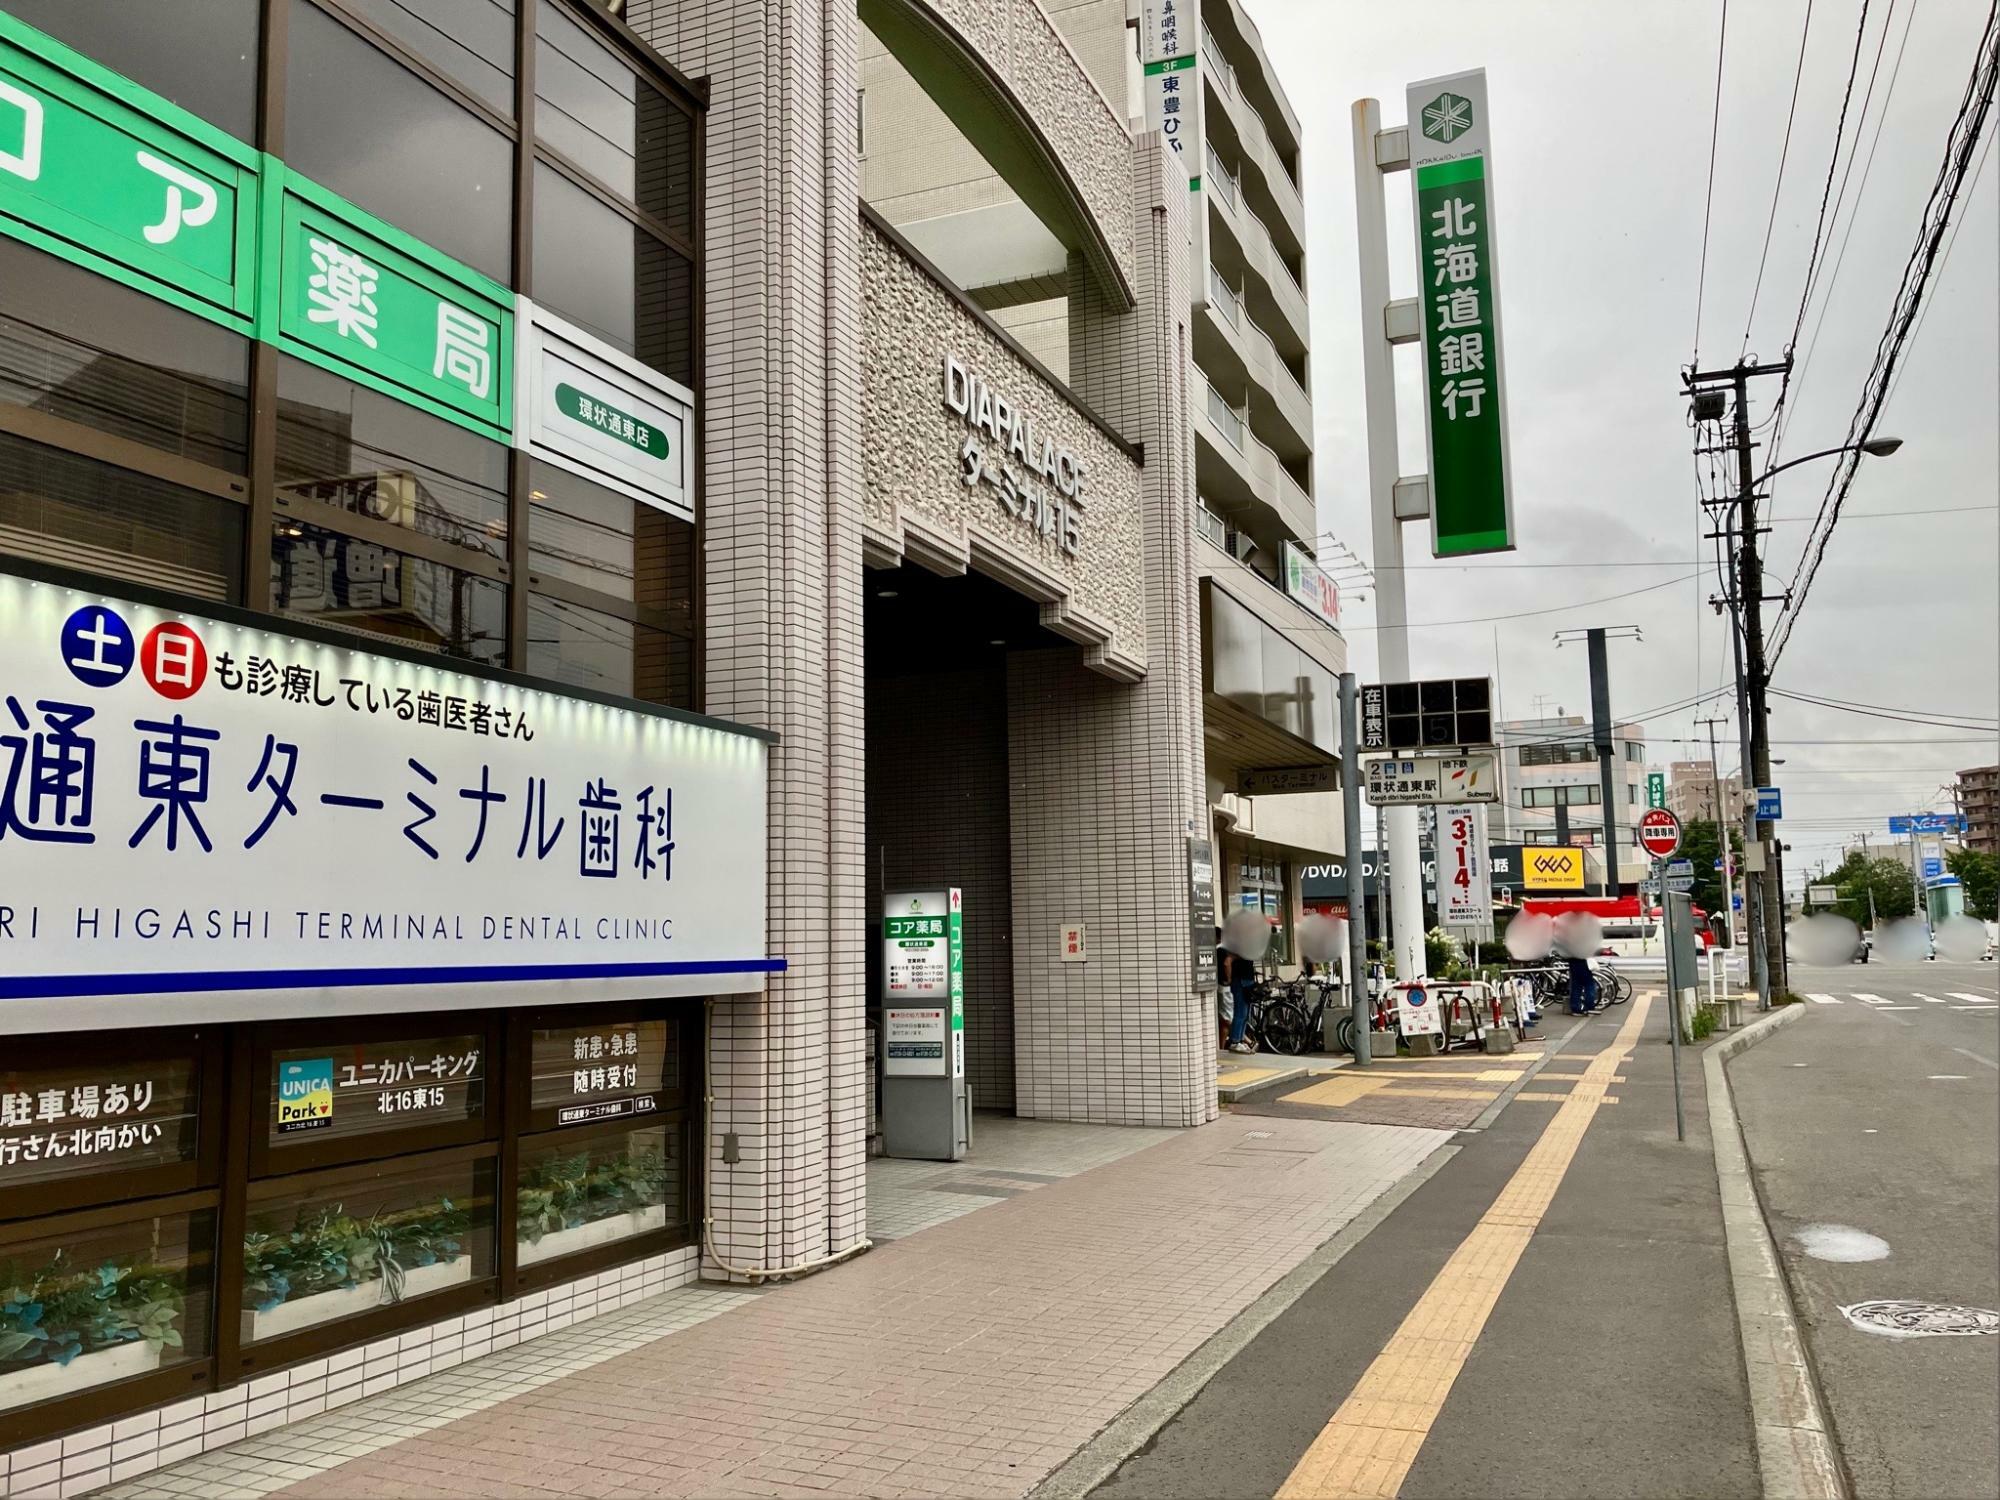 札幌地下鉄東豊線「環状通東」駅